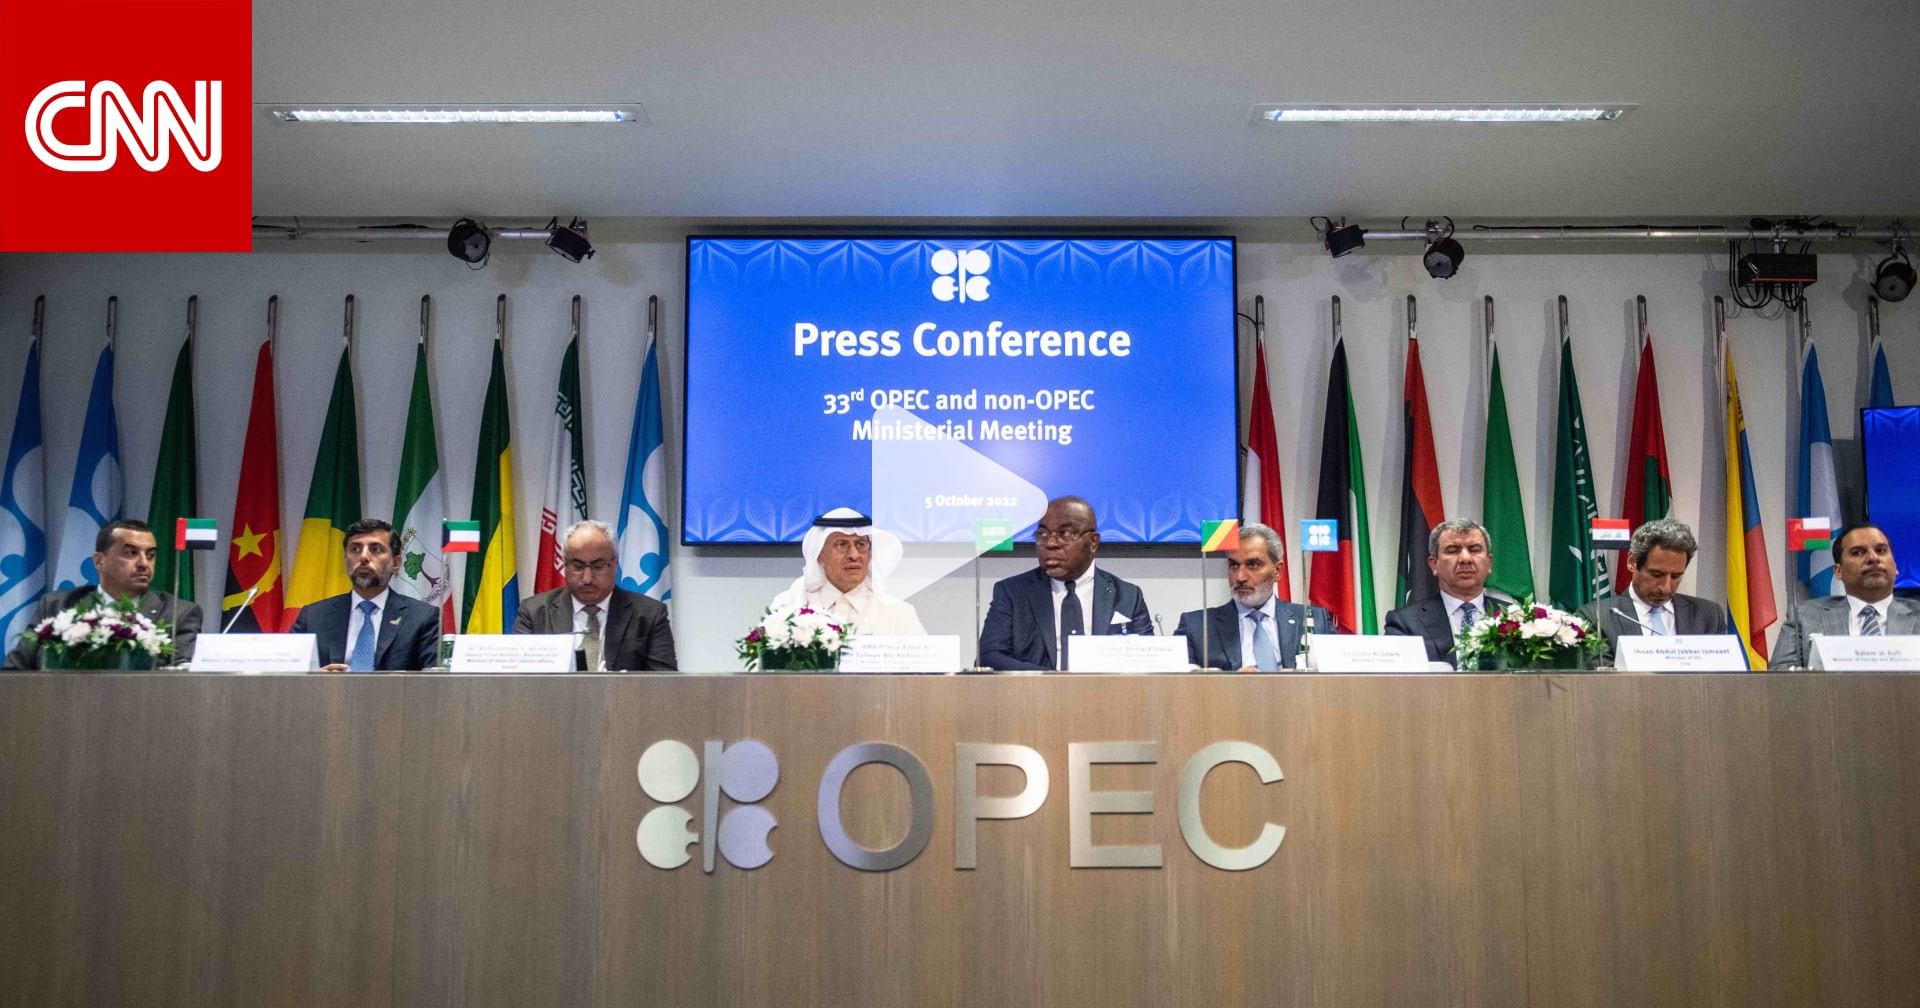 كيف يبدو مستقبل اقتصاد السعودية وهل سيؤثر قرار “أوبك بلس” إيجابا على أسواق النفط؟ جهاد أزعور يوضح لـCNN